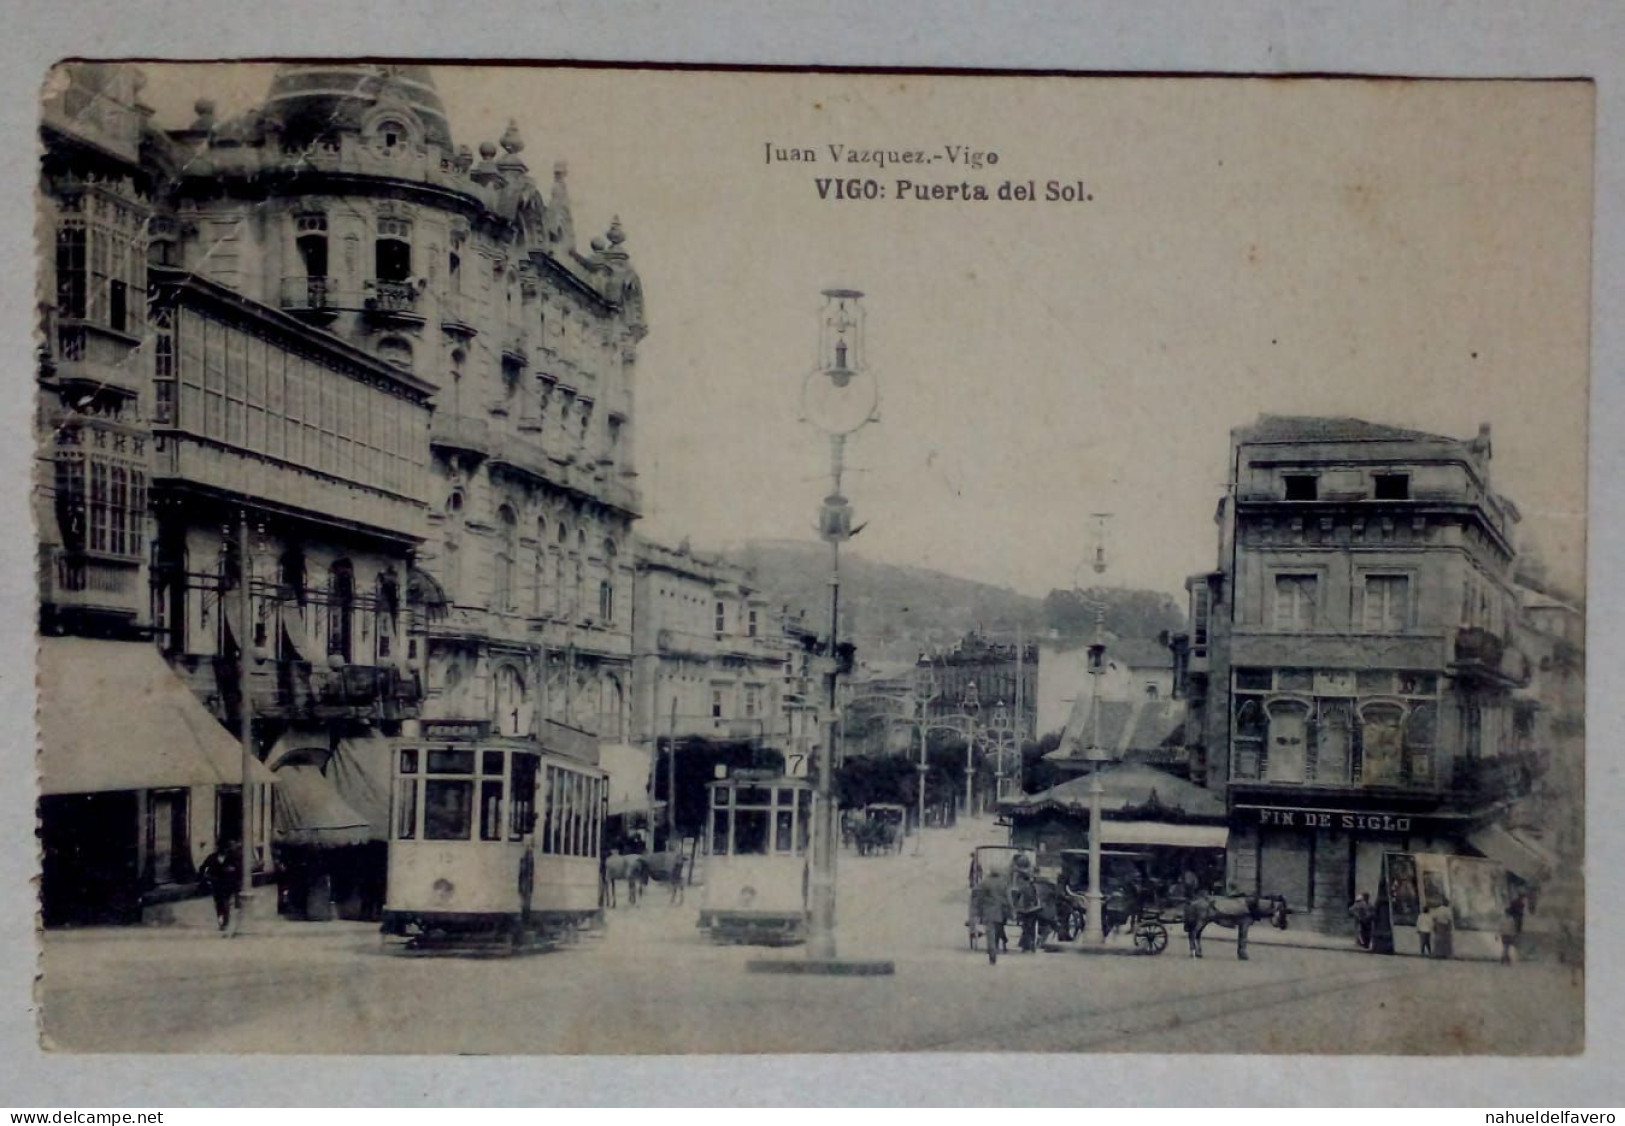 Carte Postale - Puerta Del Sol, Vigo. - Fotografía